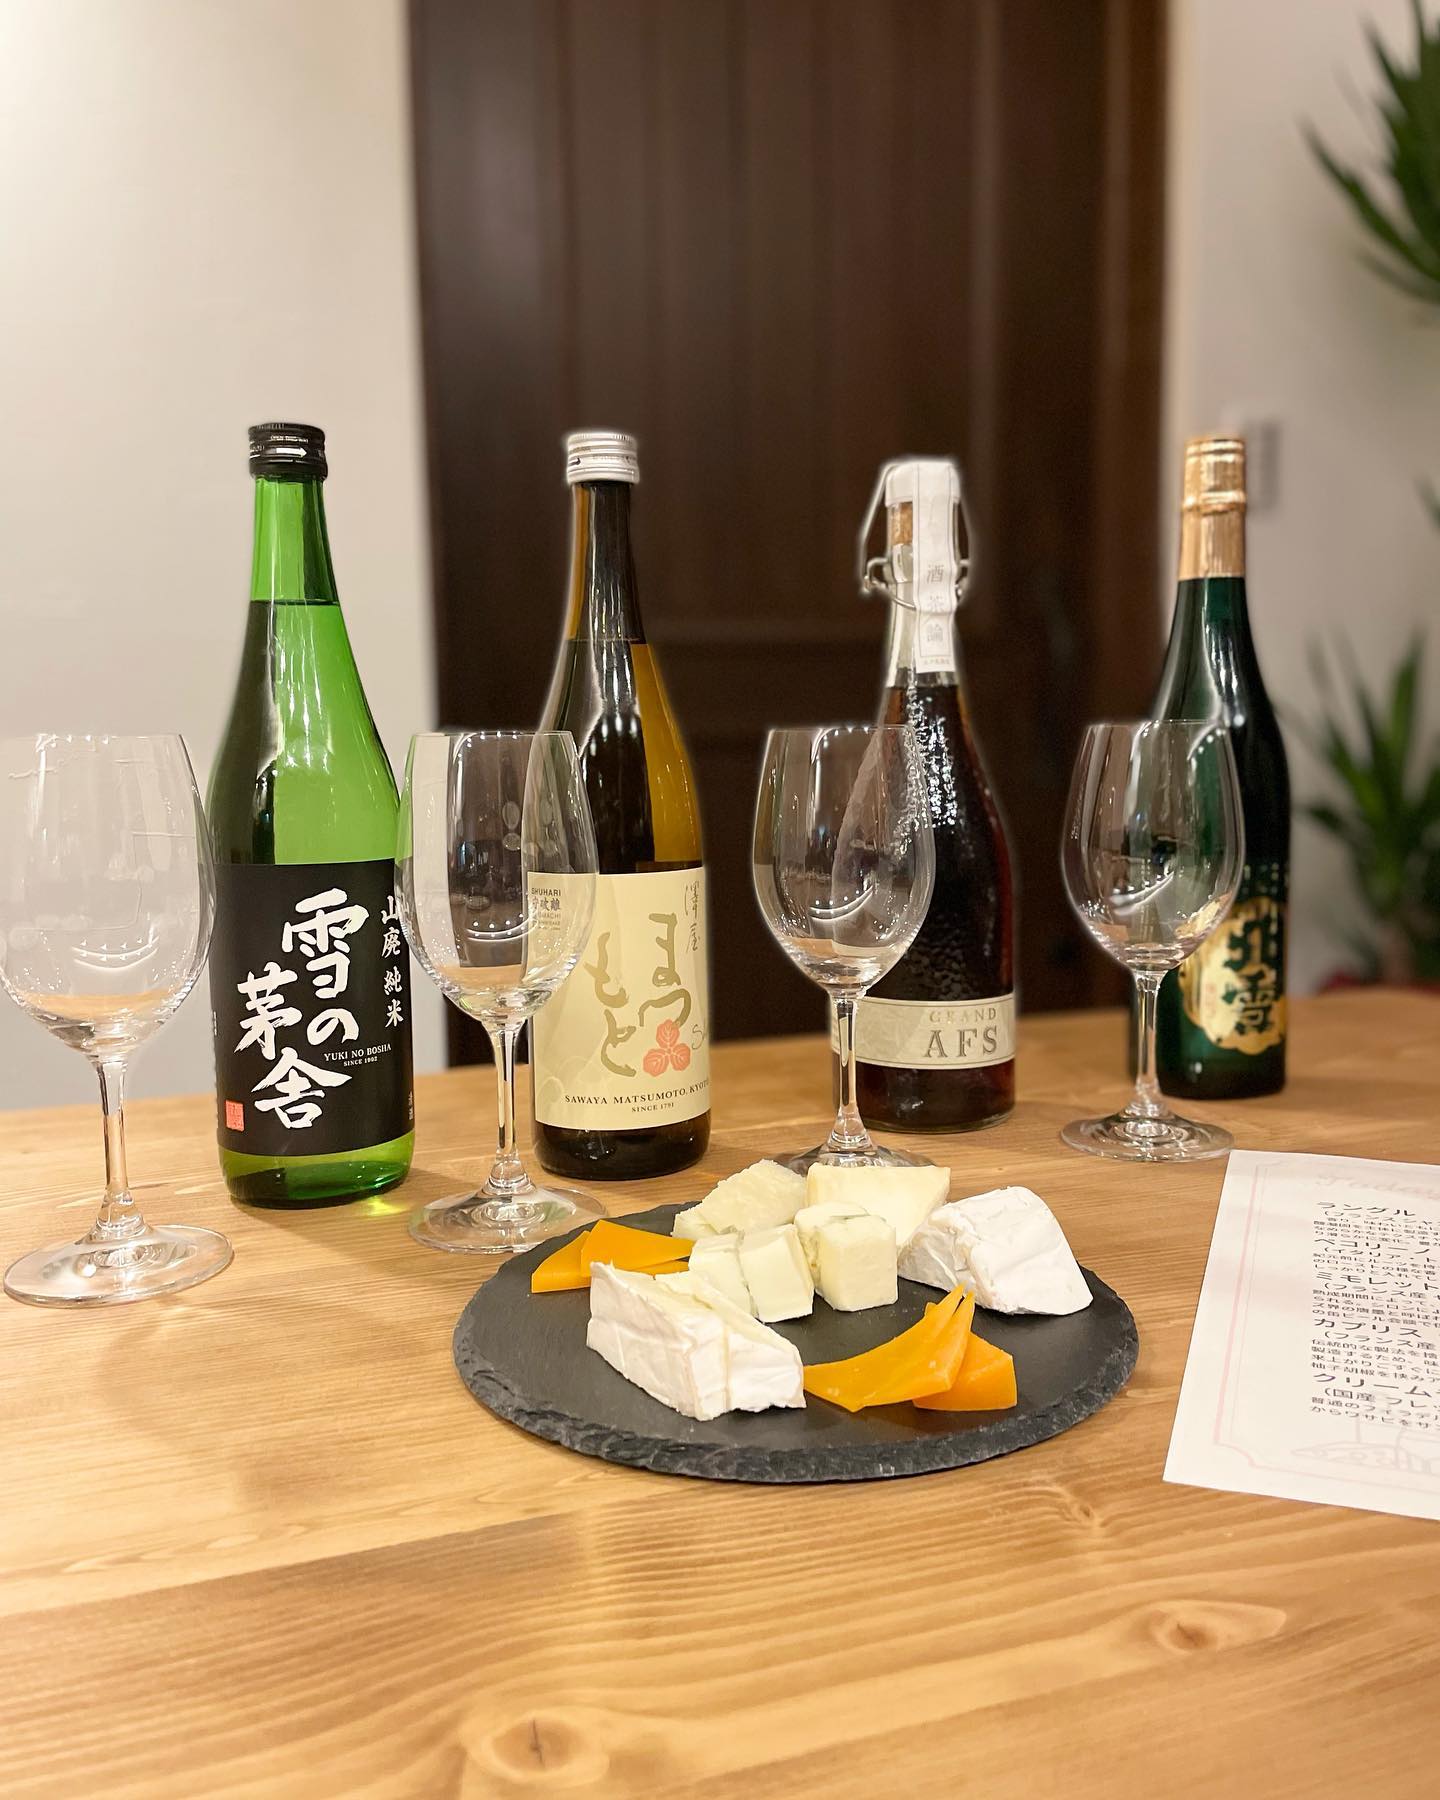 ・
・
先日 @wine_bar_jerez 様にて開催された、日本酒とチーズのペアリング勉強会に、

@beerbarbreak 様
@cafe_and_bar_mahoroba 様

とご一緒に我々すいととも参加させていただきました🧀